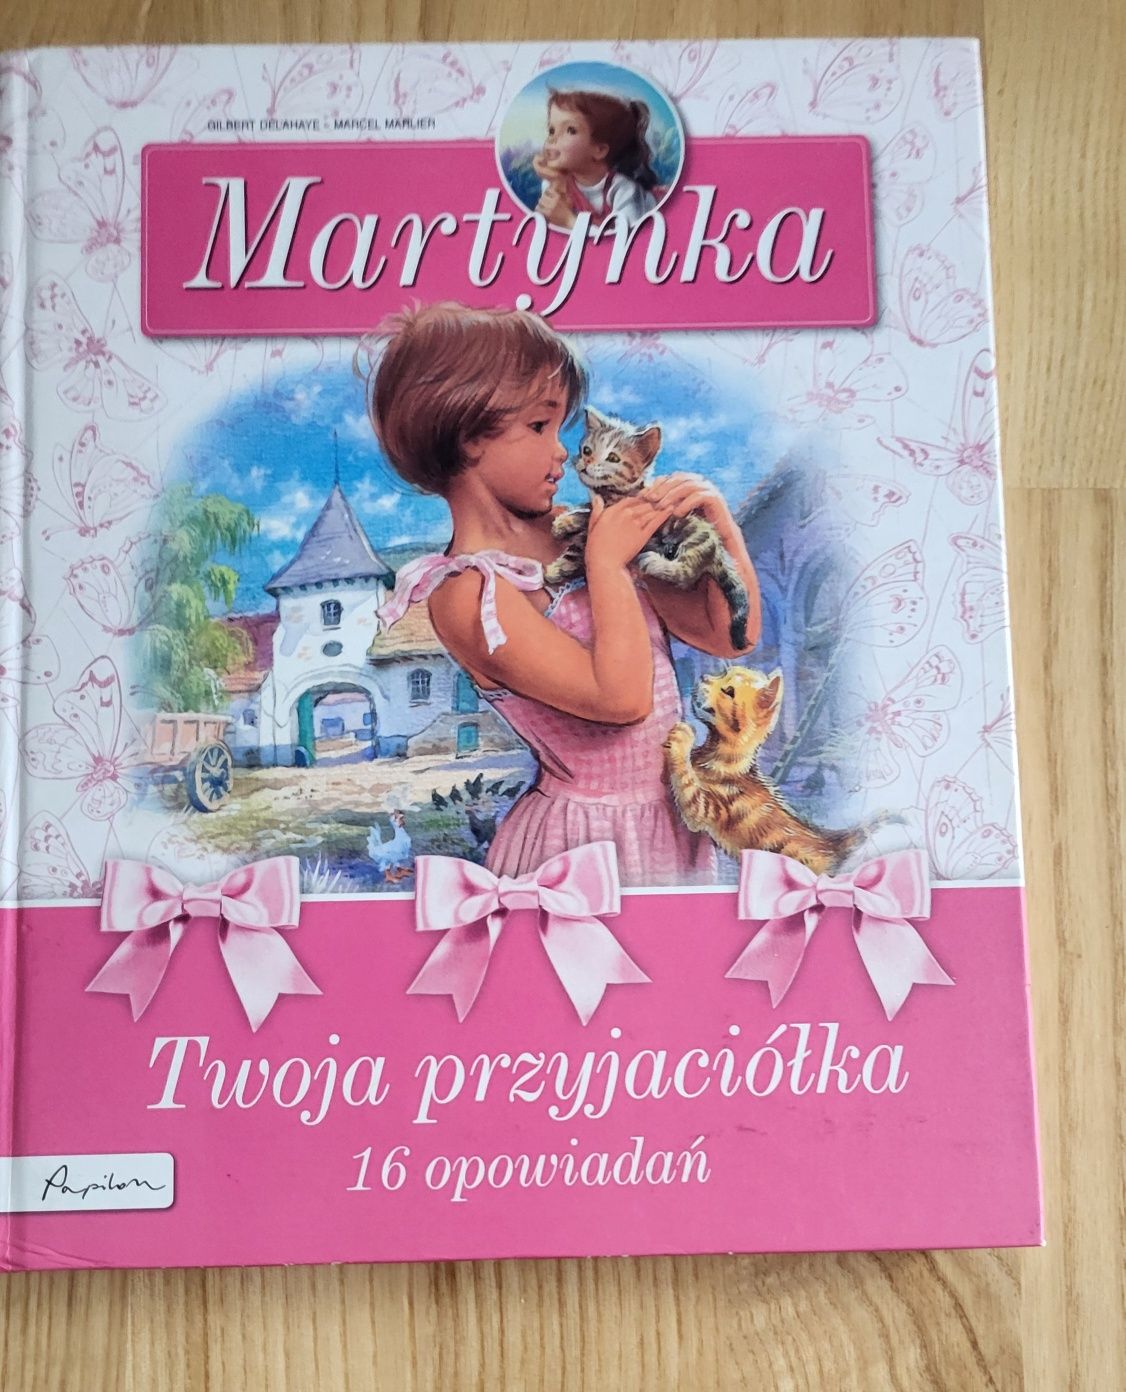 Książki z serii Martynka